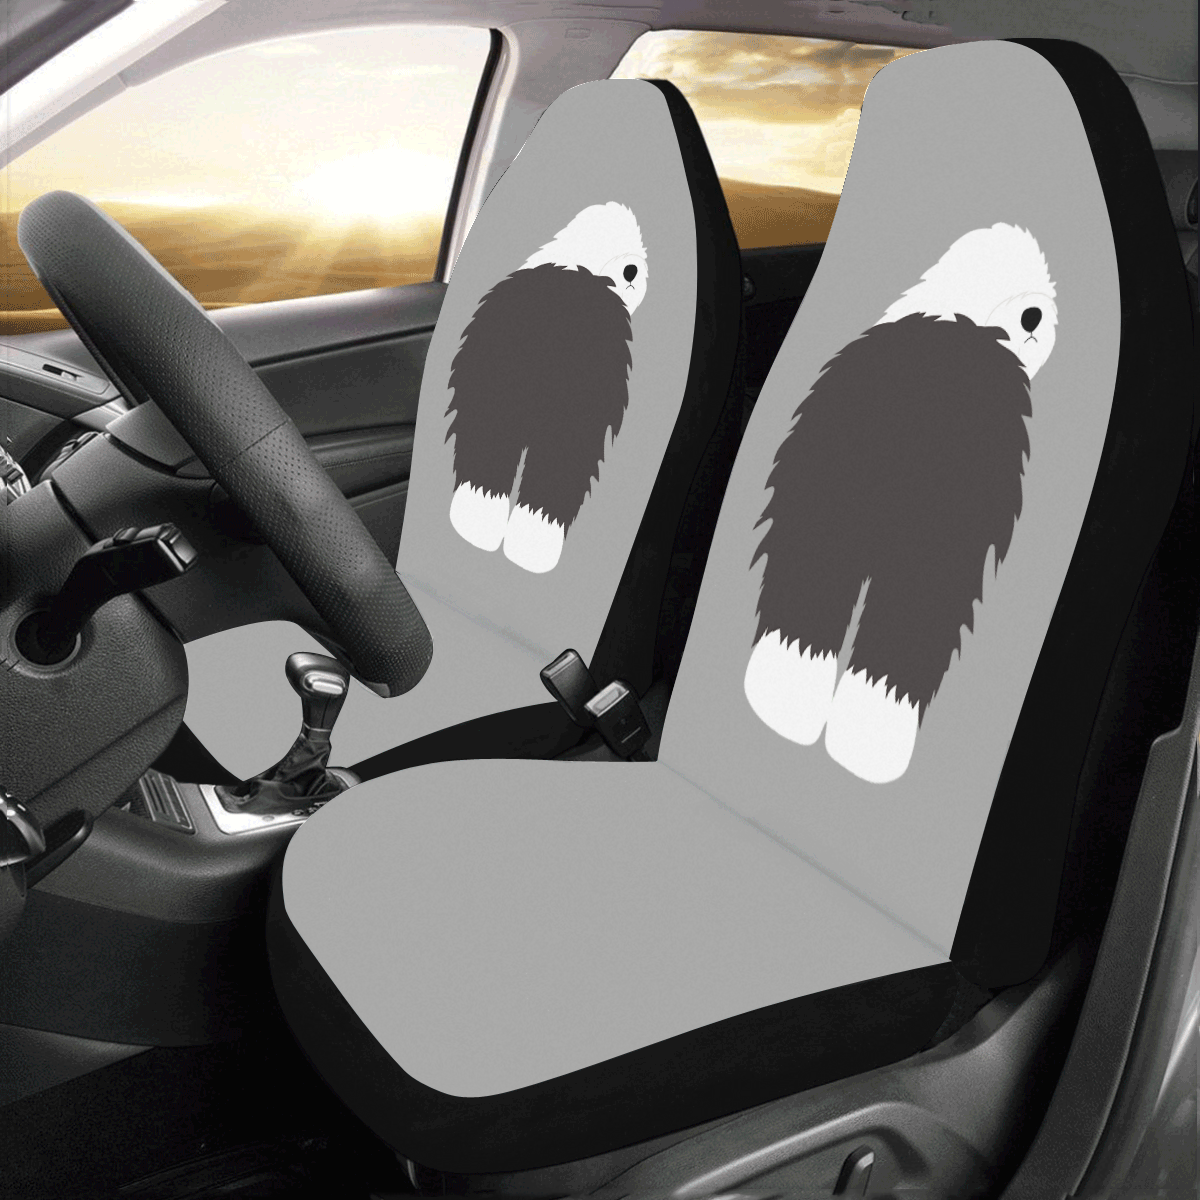 Bumz Car Seat Covers (Set of 2)